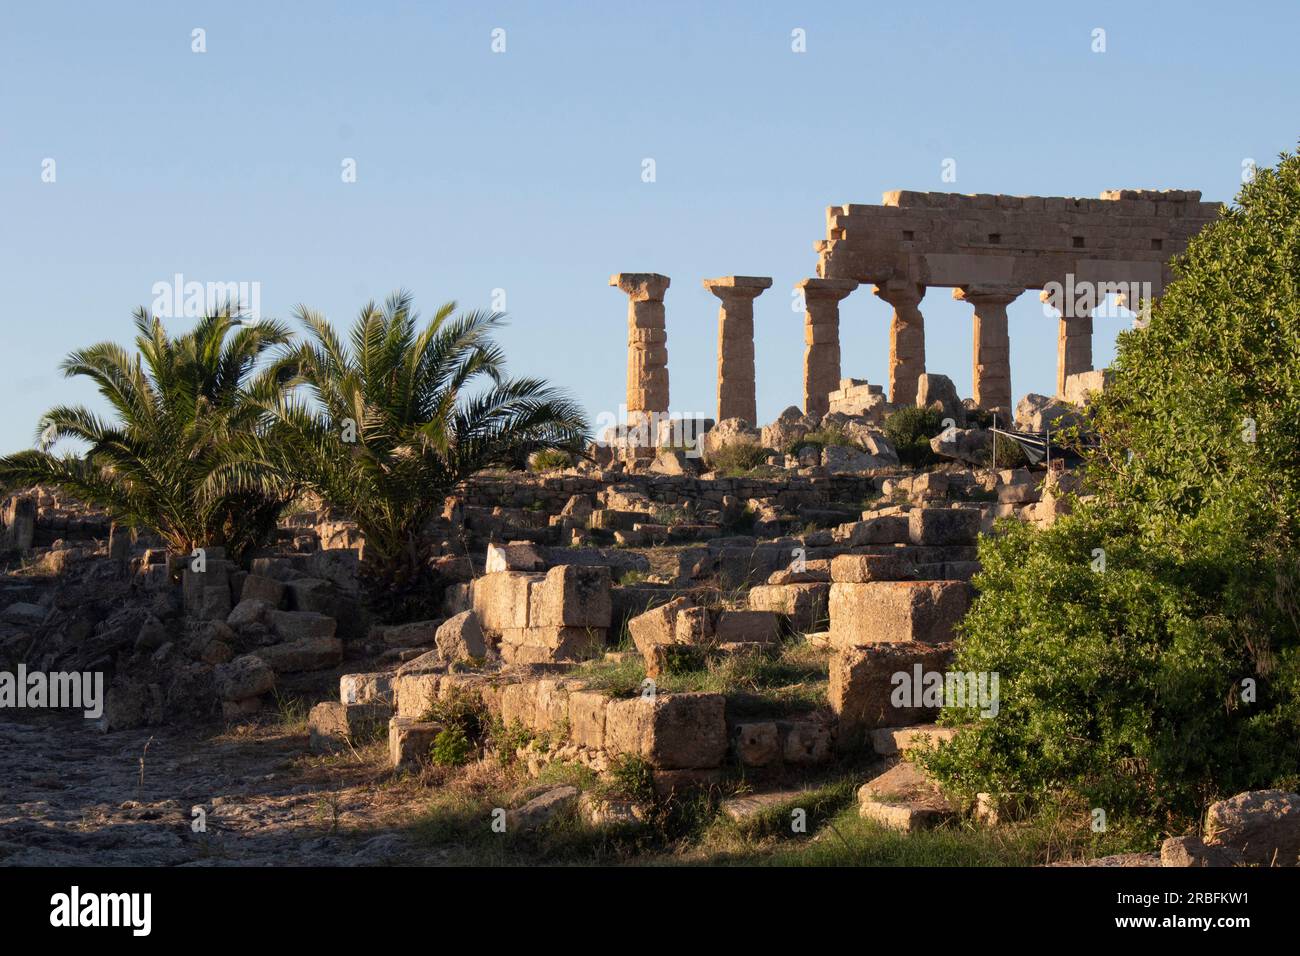 Ruinen des griechischen Tempels C - auf der Akropolis, der auf einem Hügel gelegenen Zitadelle der Stadt Selinunte - Selinus - im äußersten Westen von Sizilien, Italien Stockfoto